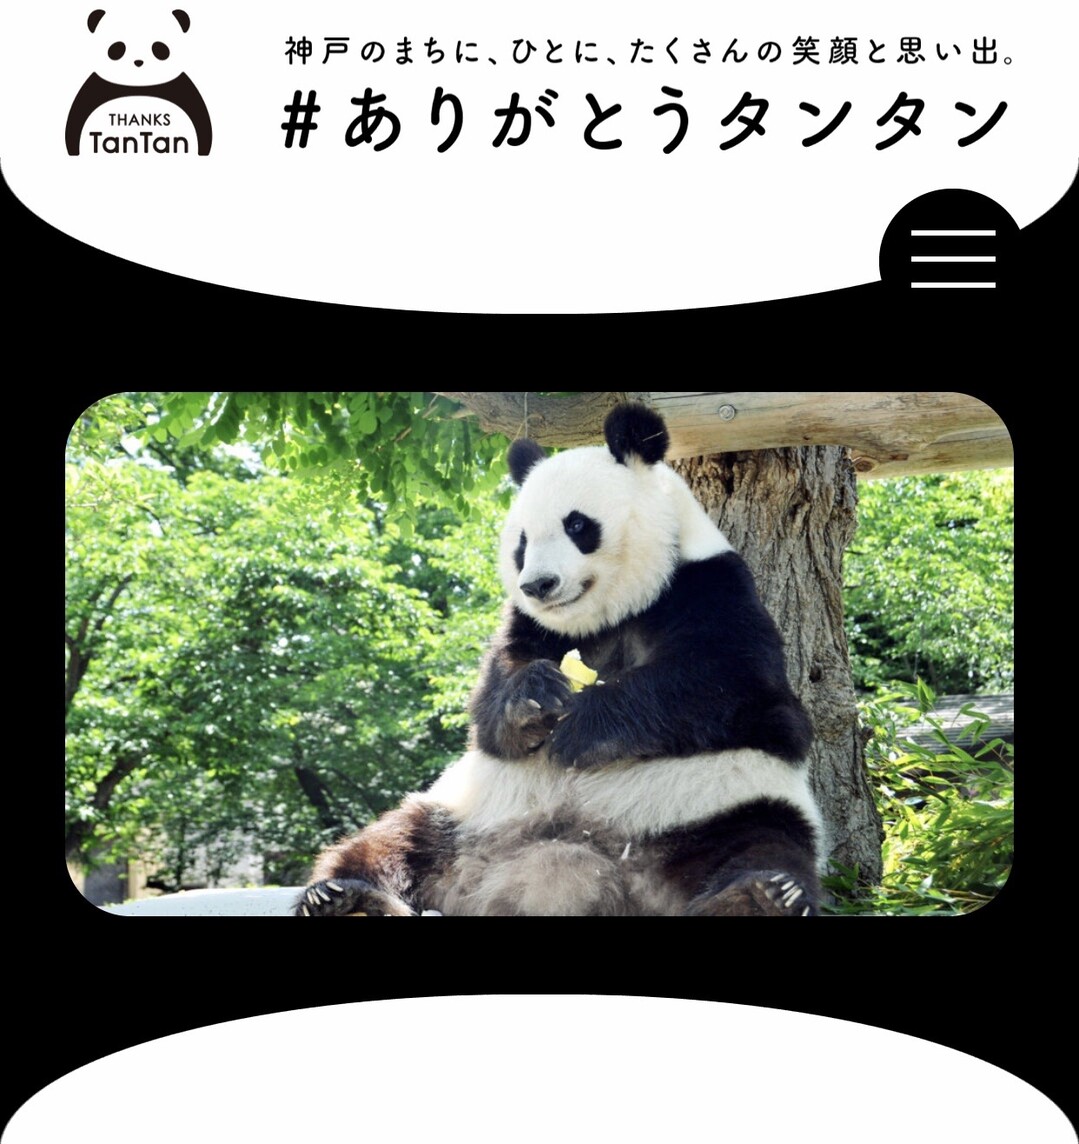 ありがとうタンタン 神戸市王子動物園 07 11 かおりんさんの神戸市の活動日記 Yamap ヤマップ